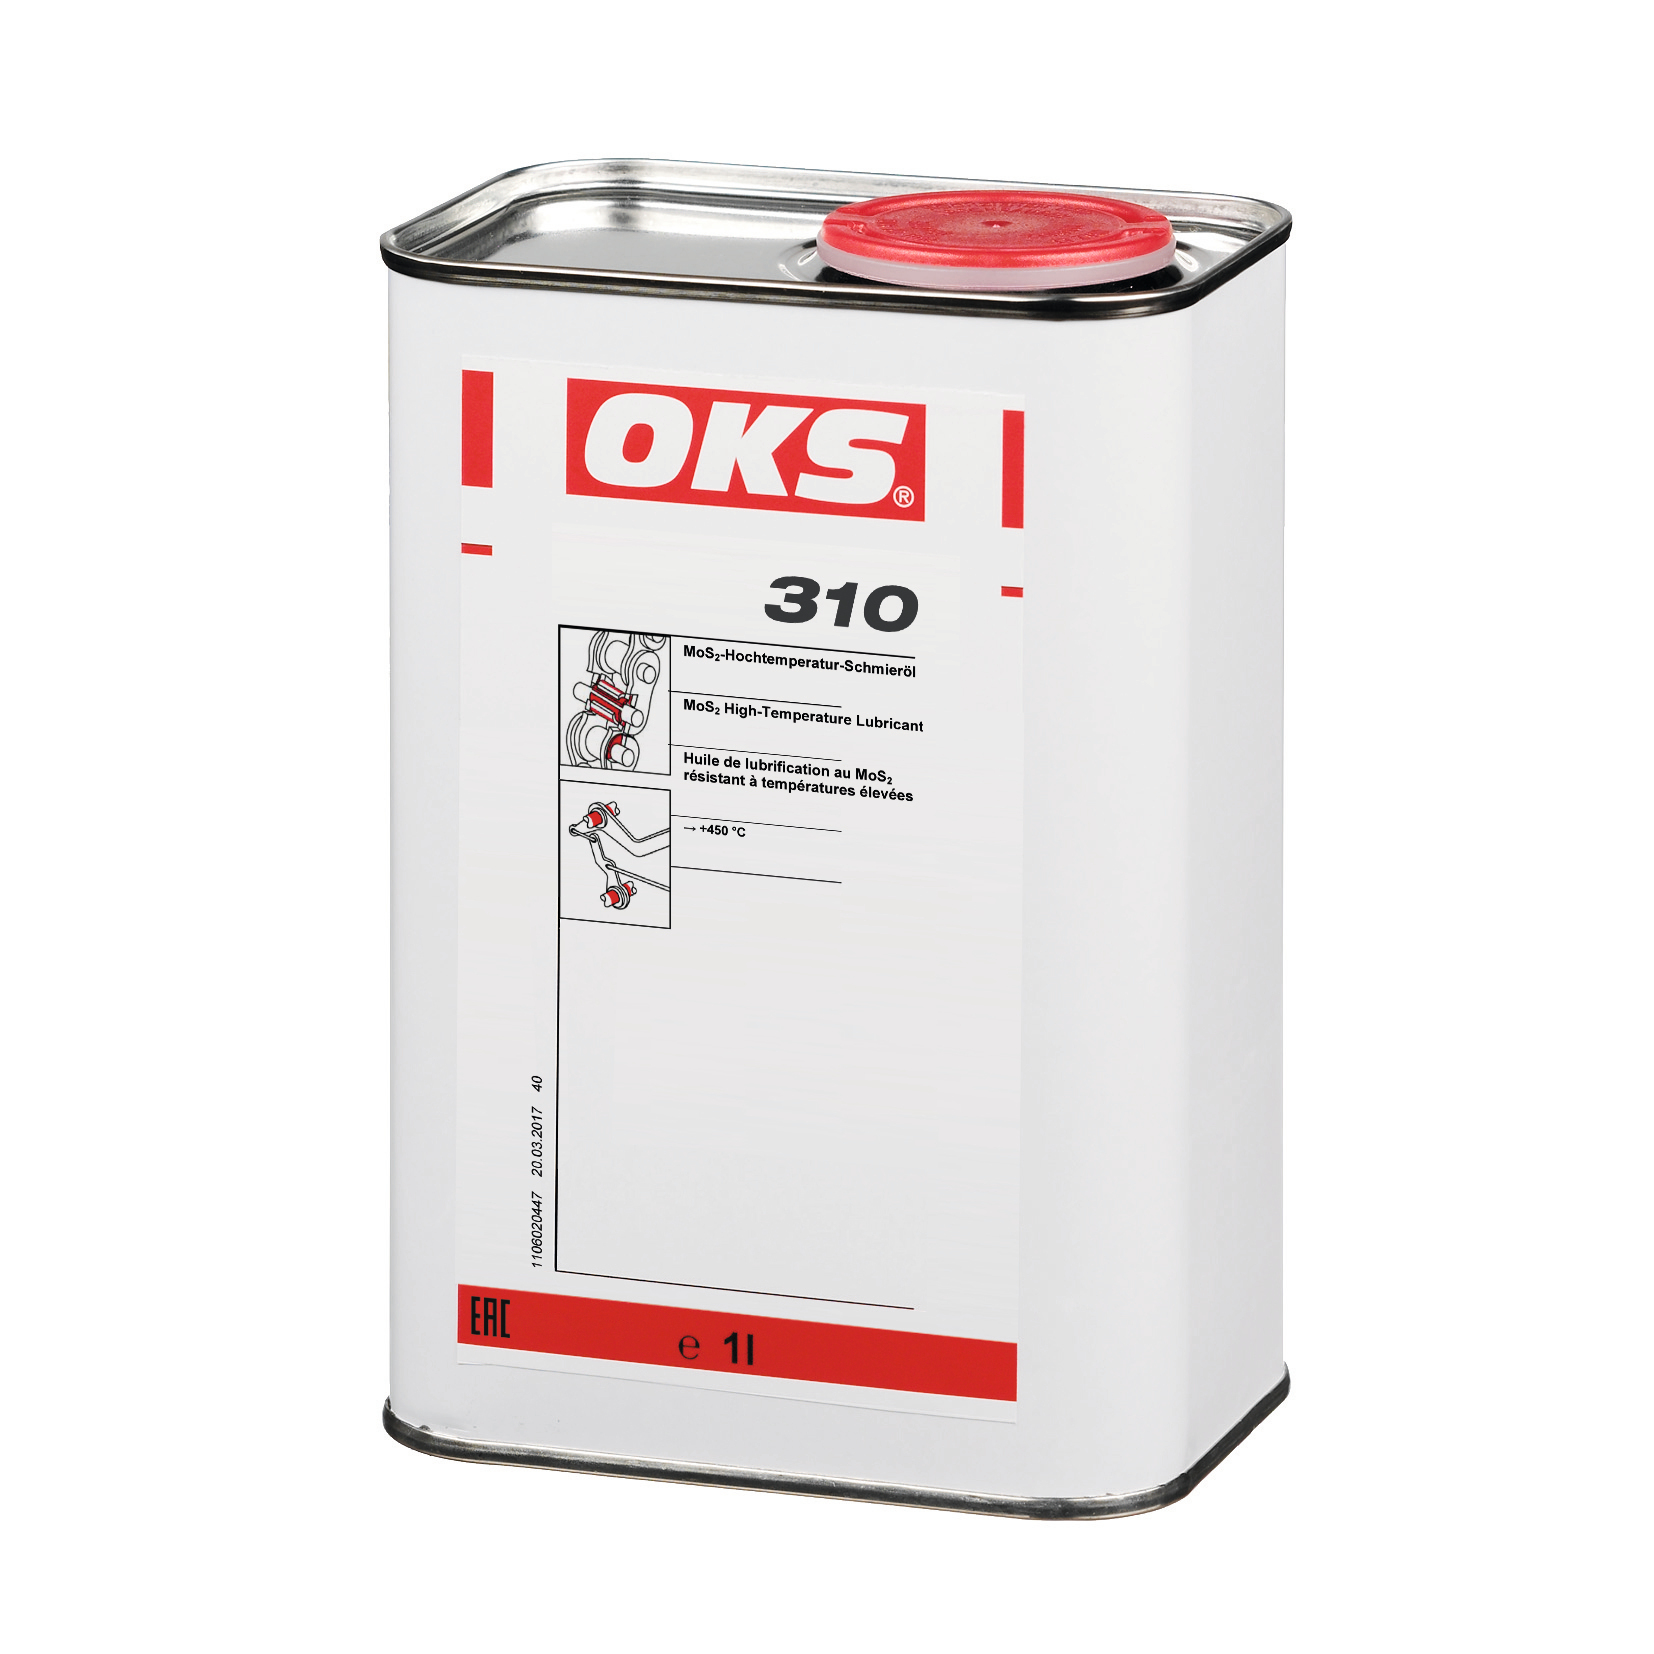 OKS0310-1 OKS 310 is een hoge-temperatuurolie met MoS₂ voor smering van machinedelen tot +450°C.